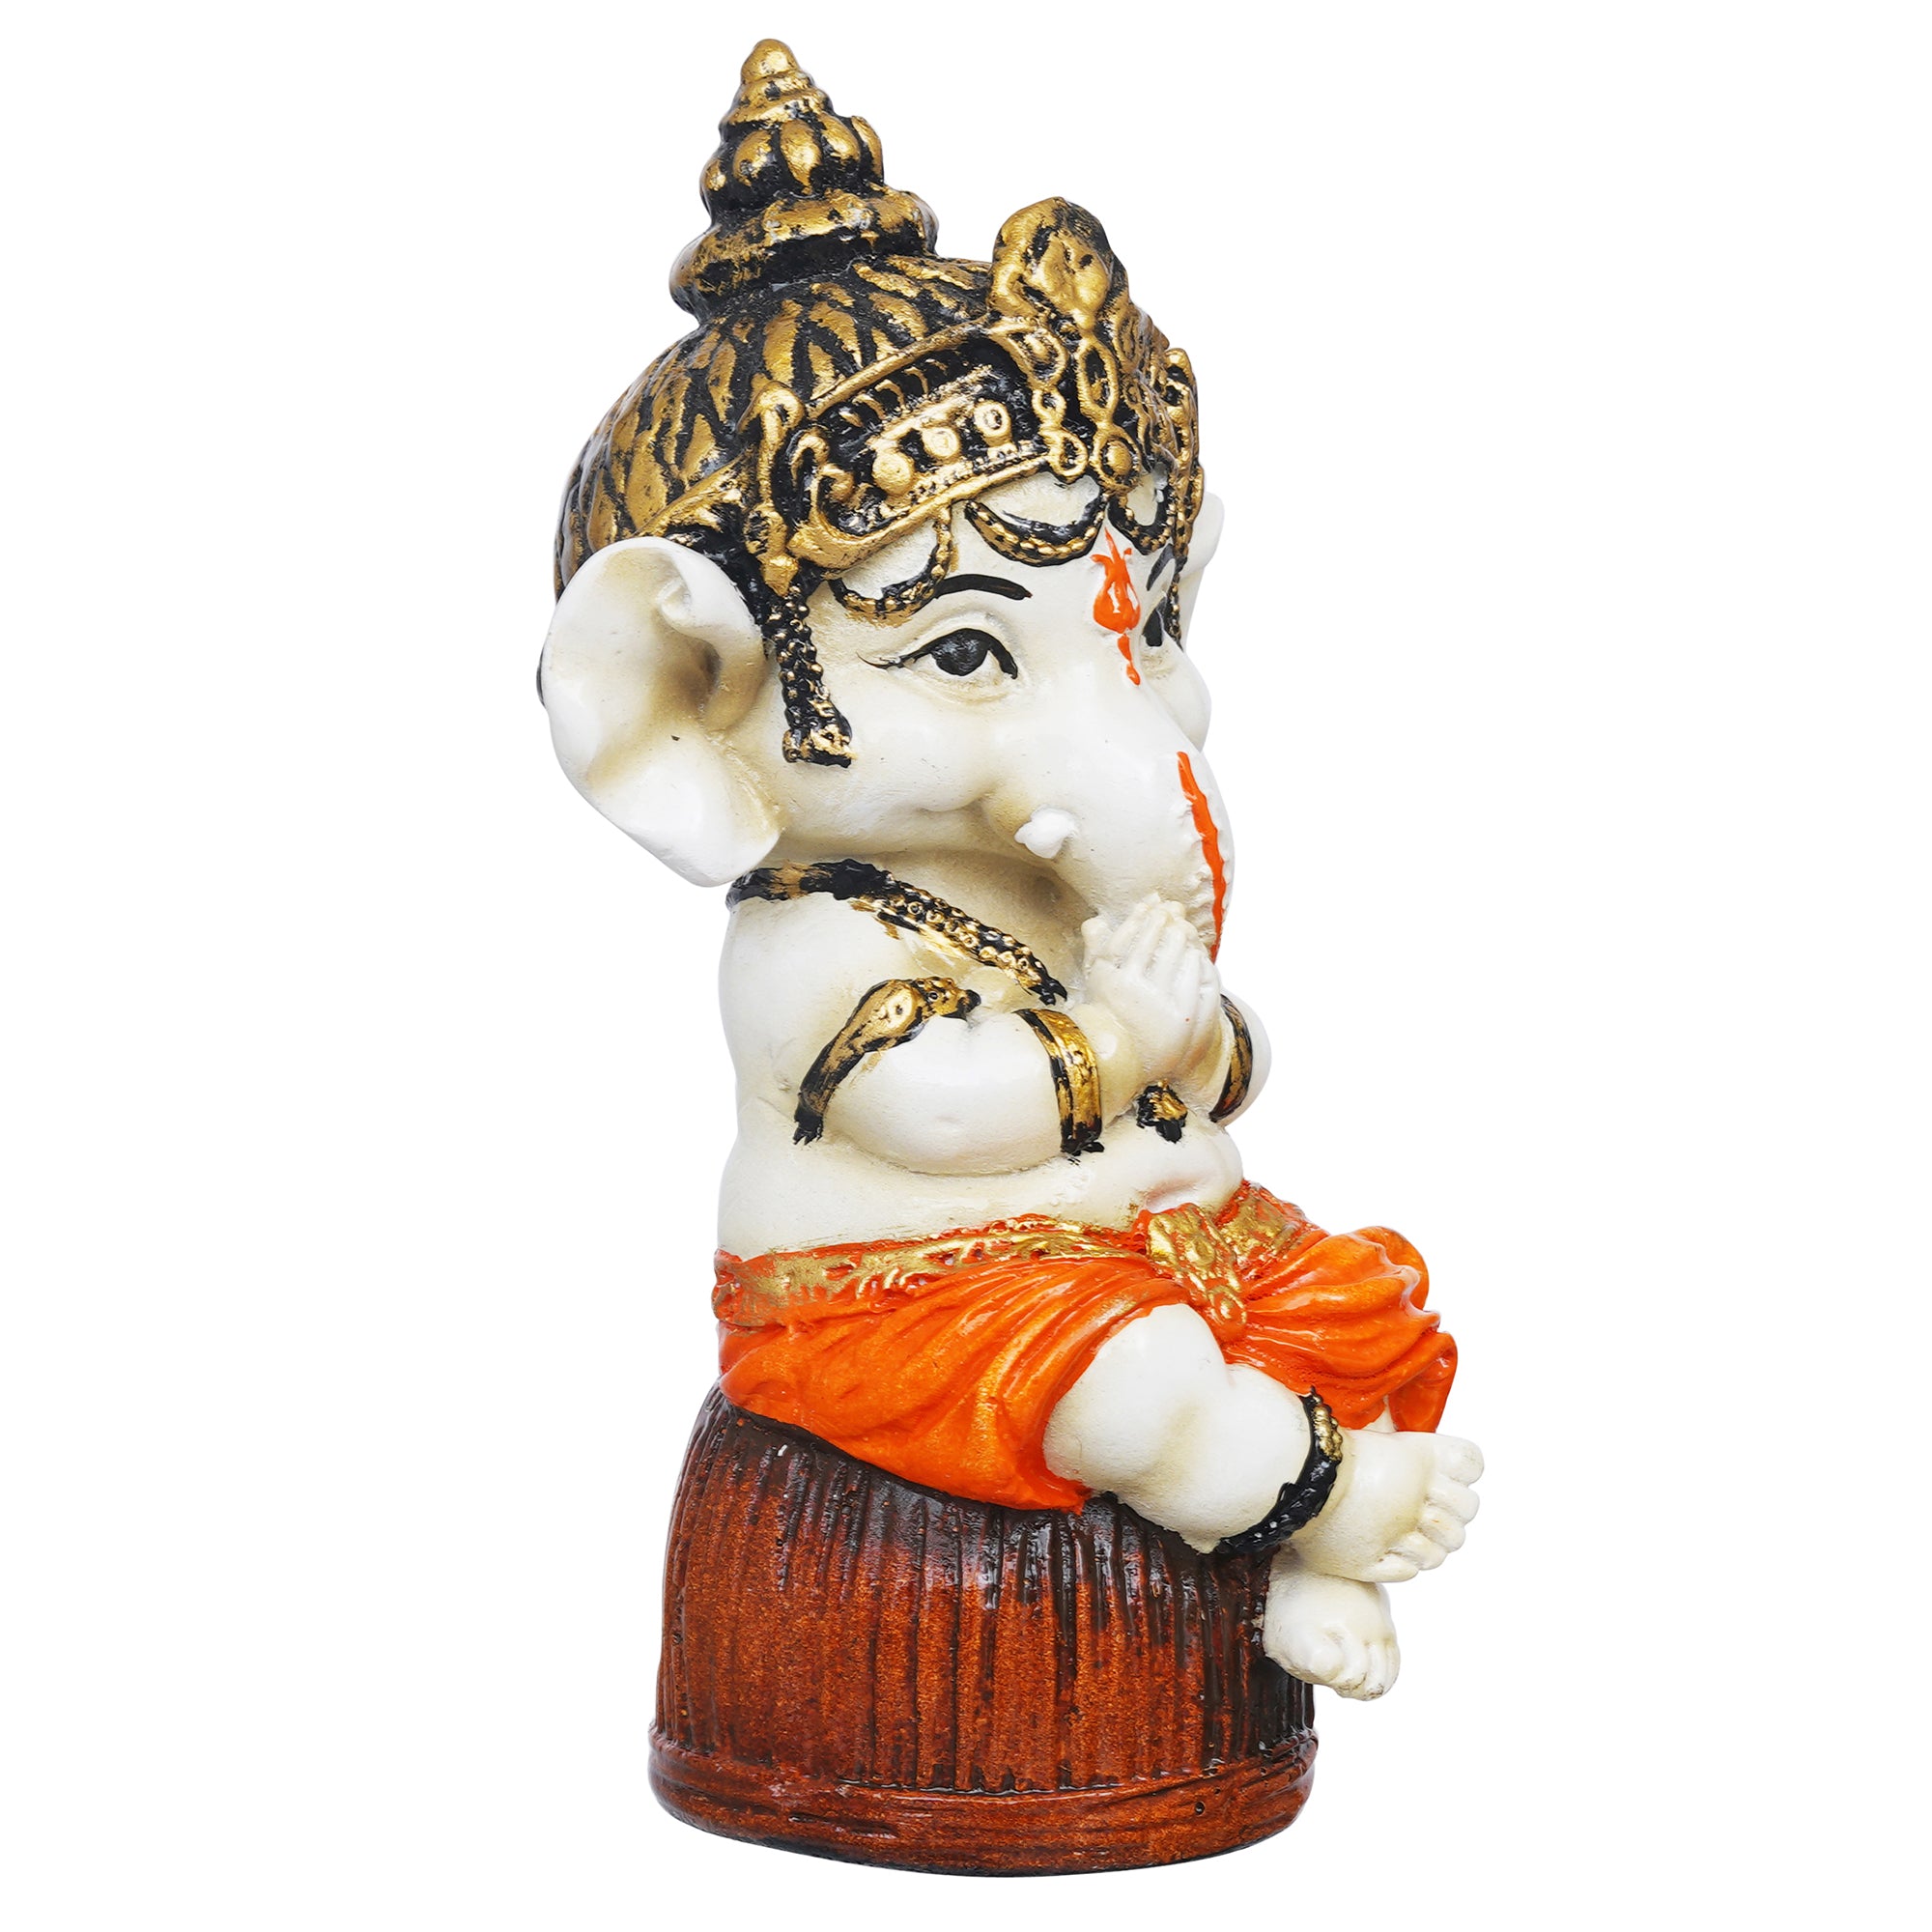 eCraftIndia Orange Polyresin Handcrafted Lord Ganesha Idol Sitting on Rock 6